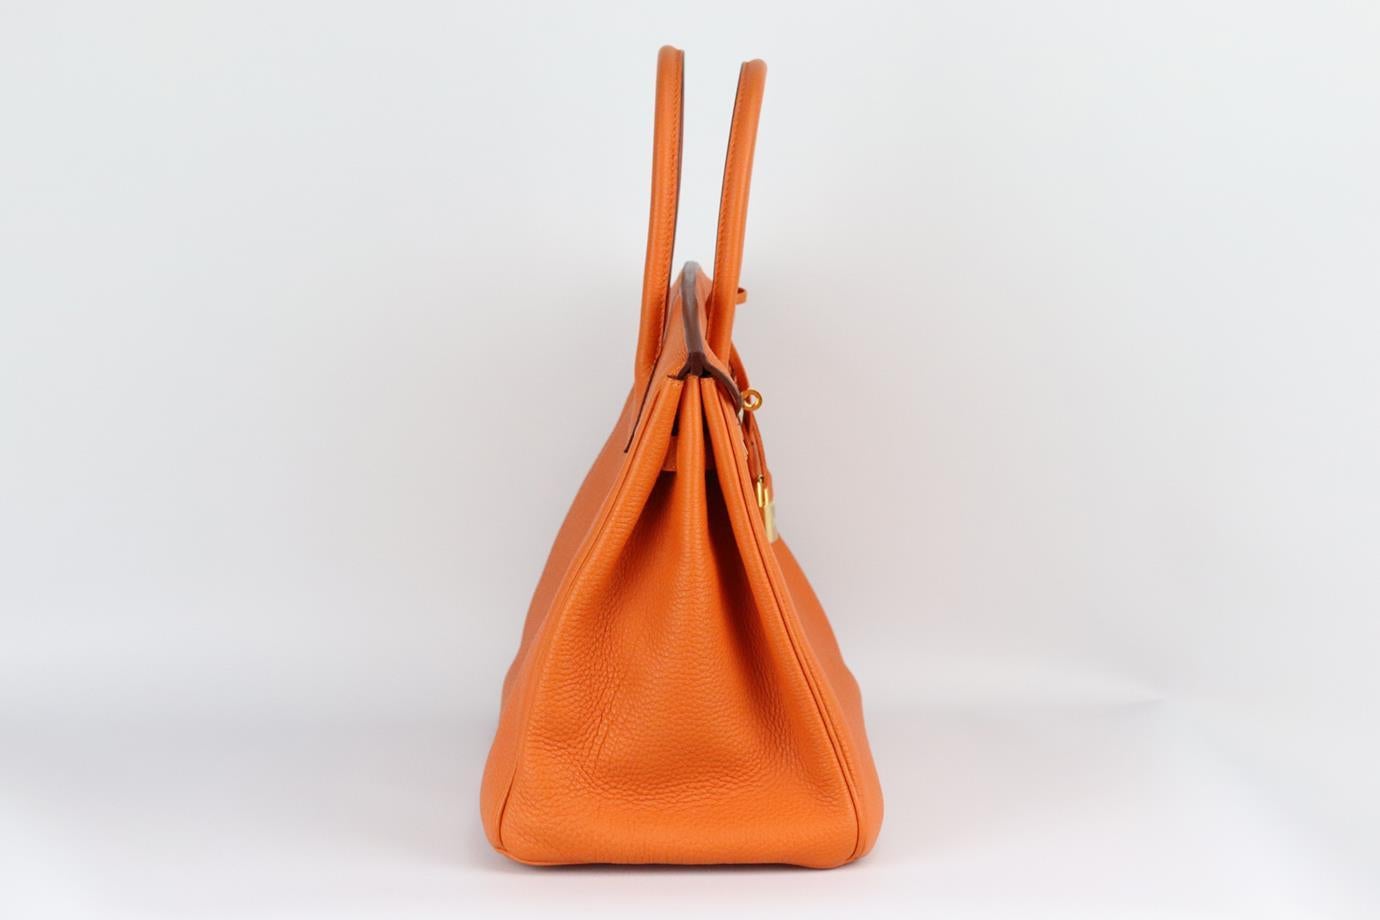 <ul>
<li>Hermès 2010 Birkin 35cm Veau Togo sac en cuir.</li>
<li>Fabriqué en France, ce magnifique sac à main Hermès 'Birkin' 2010 a été réalisé en cuir Veau Togo de couleur orange, avec un intérieur en cuir assorti.</li>
<li>Cuir